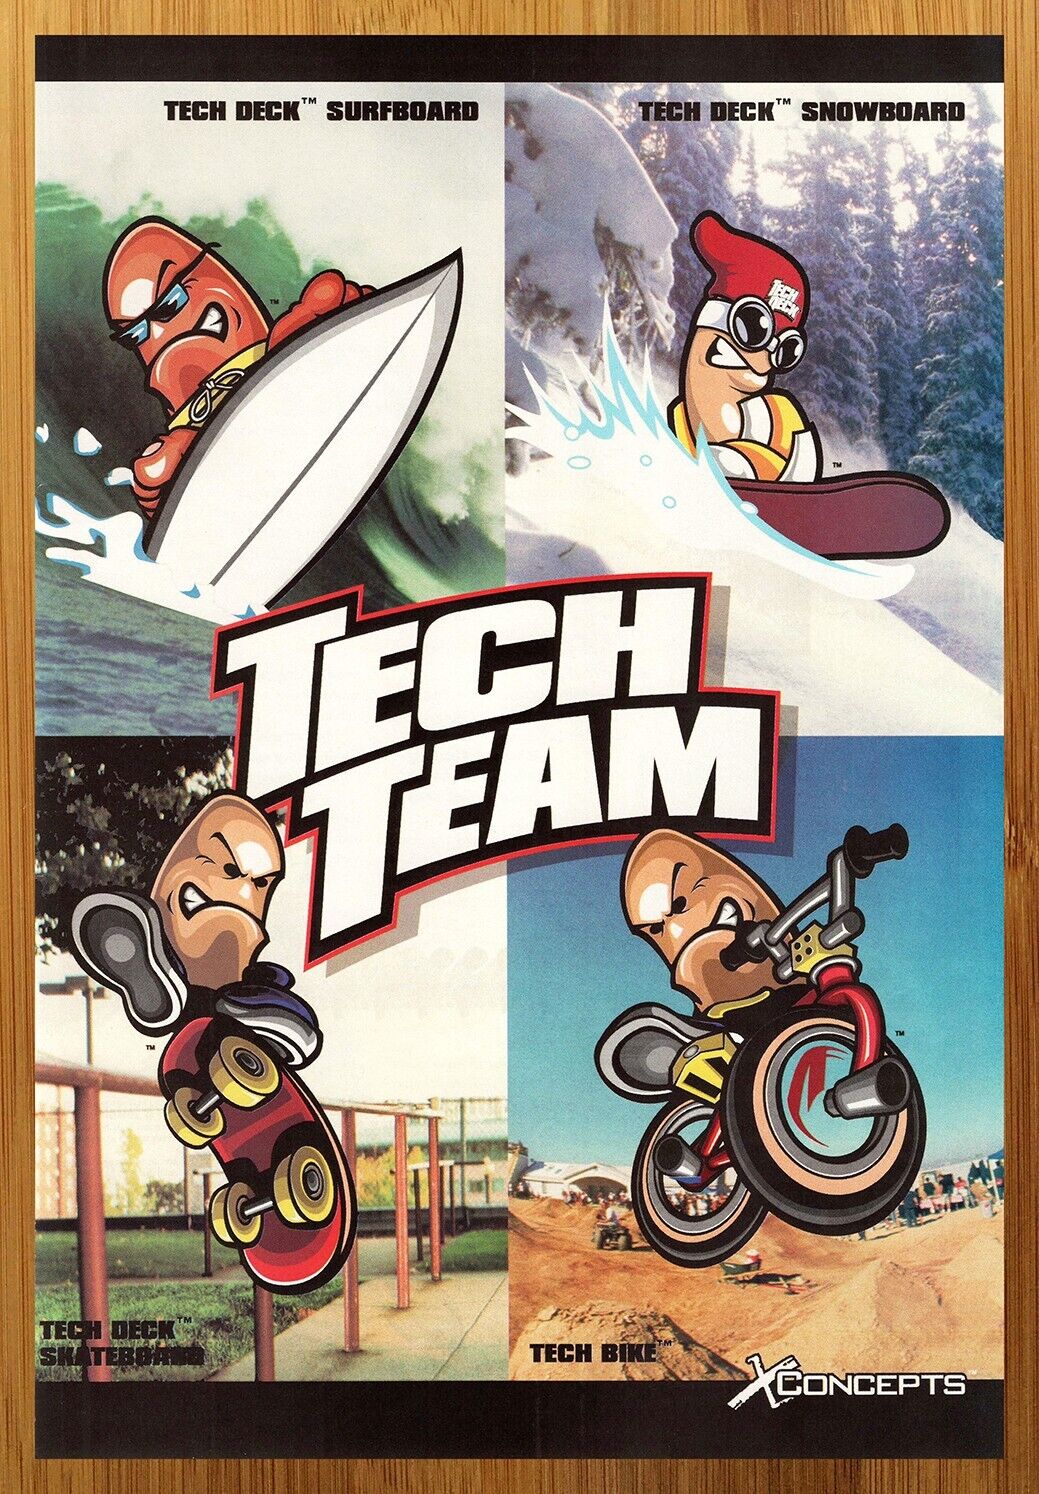 2000 X Concepts Tech Deck Toys Print Ad/Poster Skateboard Surfboard BMX Bike Art